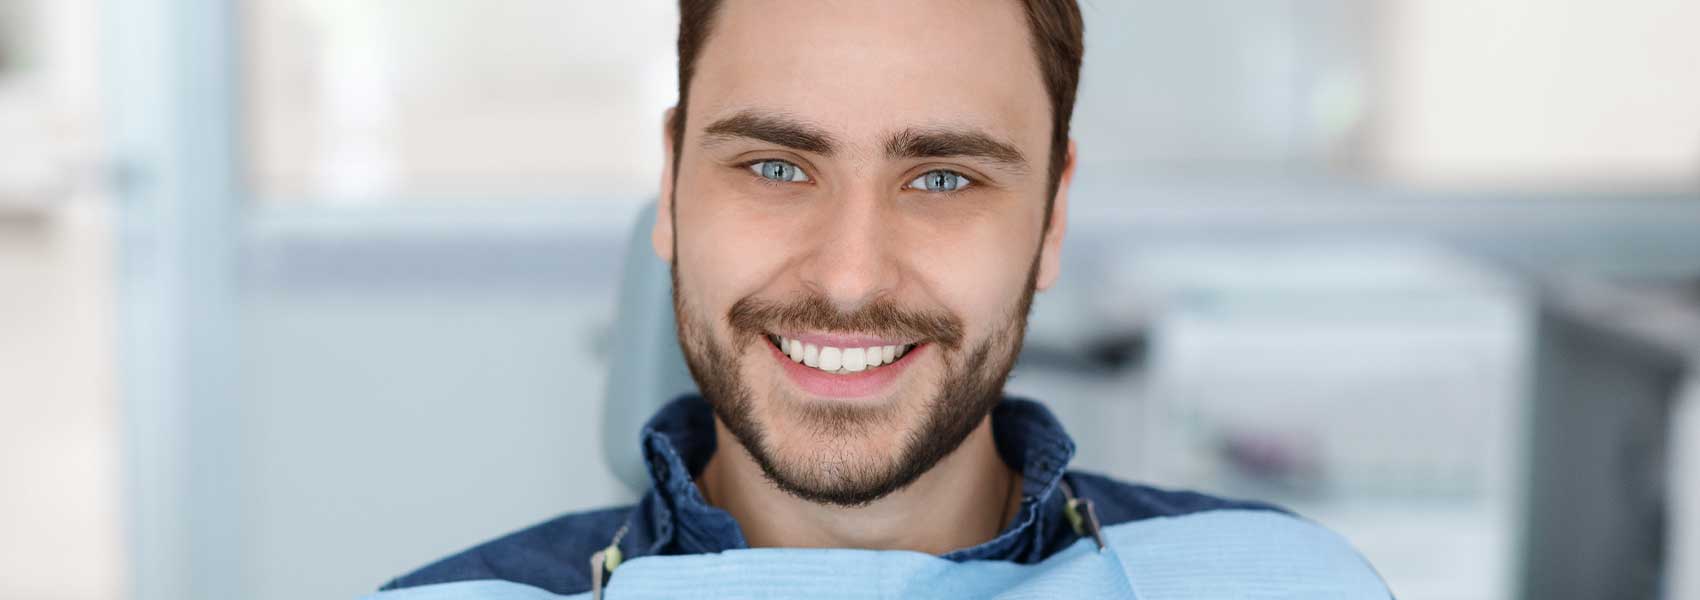 Handsome man smile after dental bridge treatments